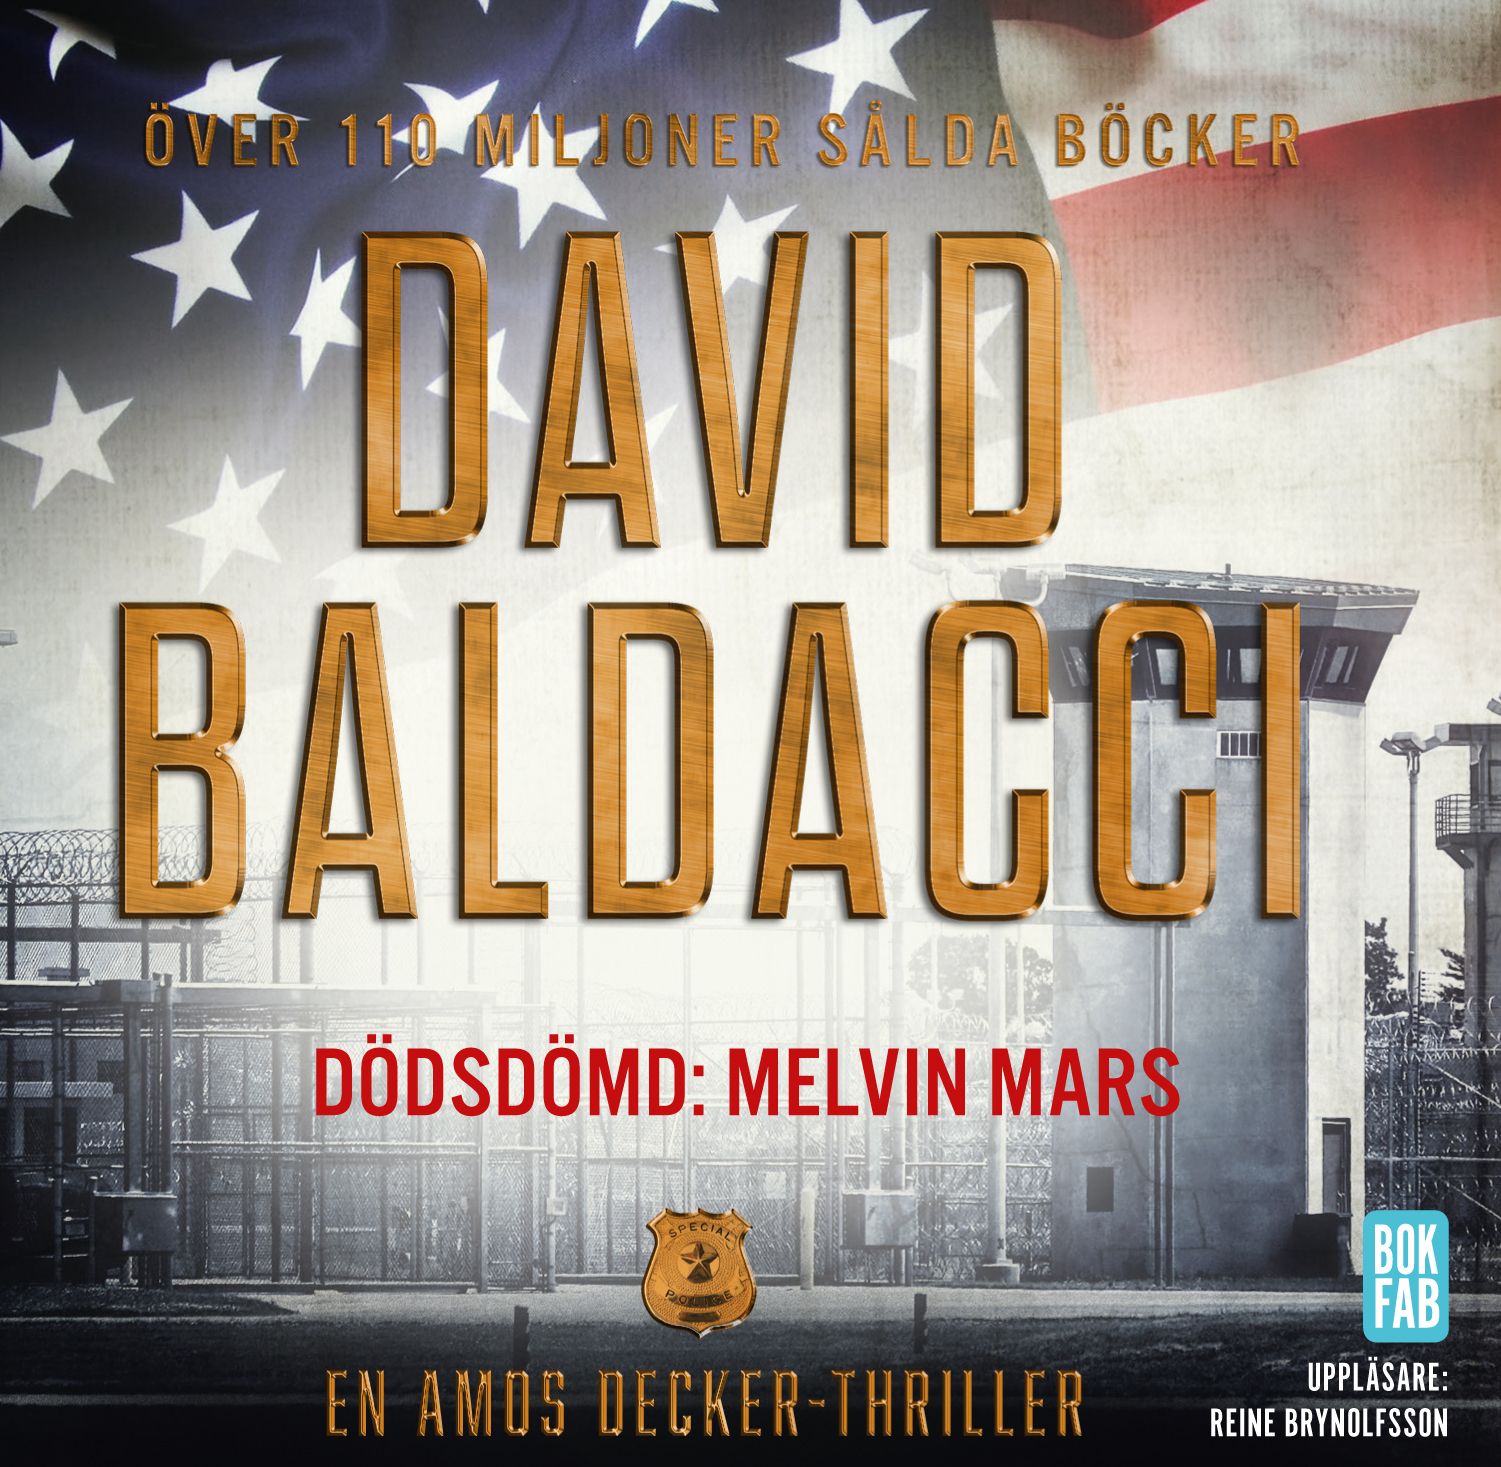 Dödsdömd: Melvin Mars, ljudbok av David Baldacci